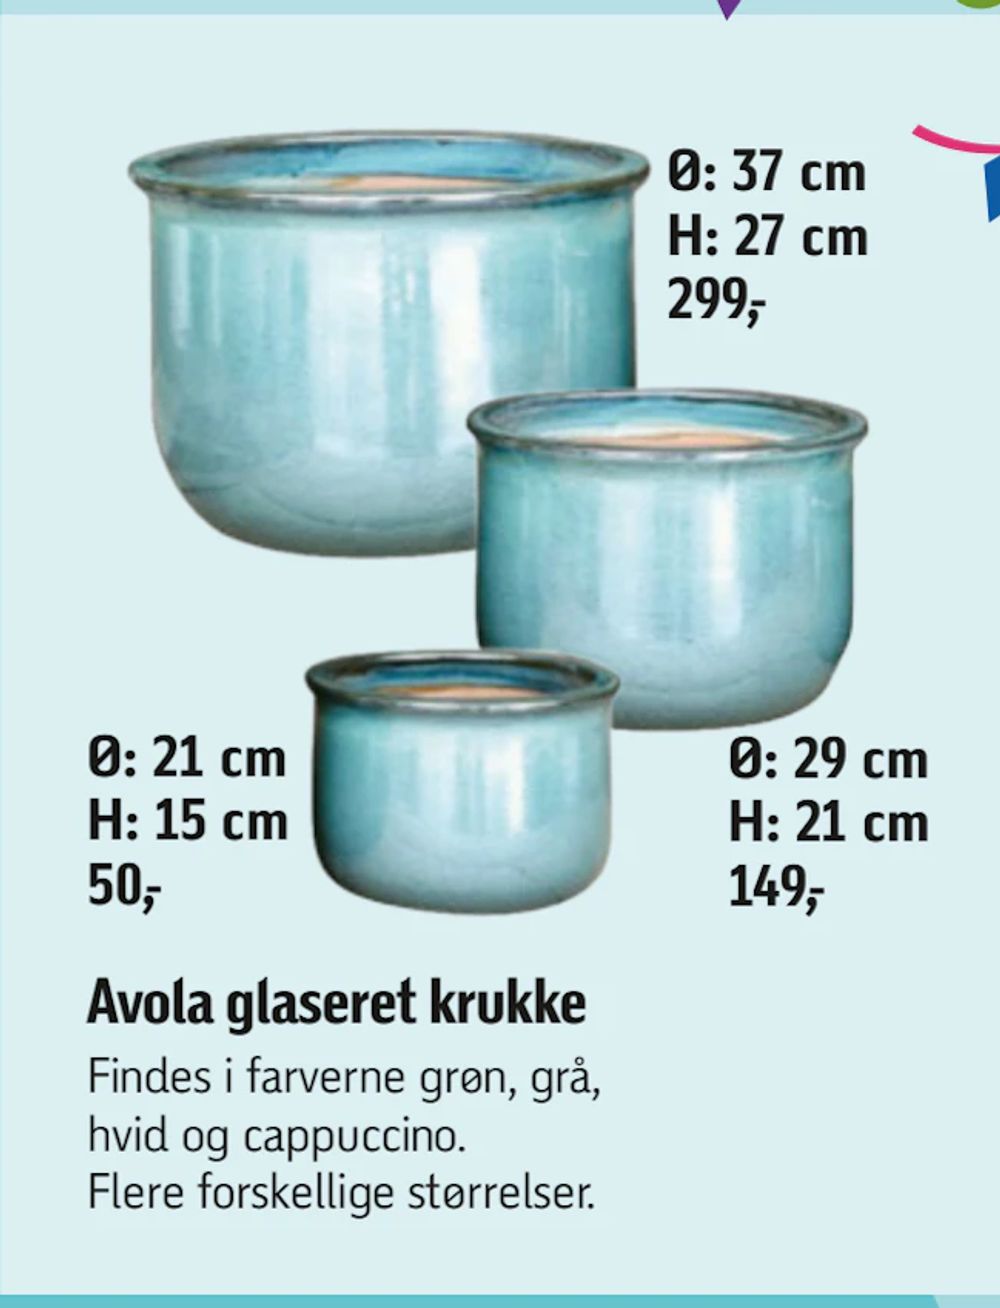 Tilbud på Avola glaseret krukke fra føtex til 50 kr.